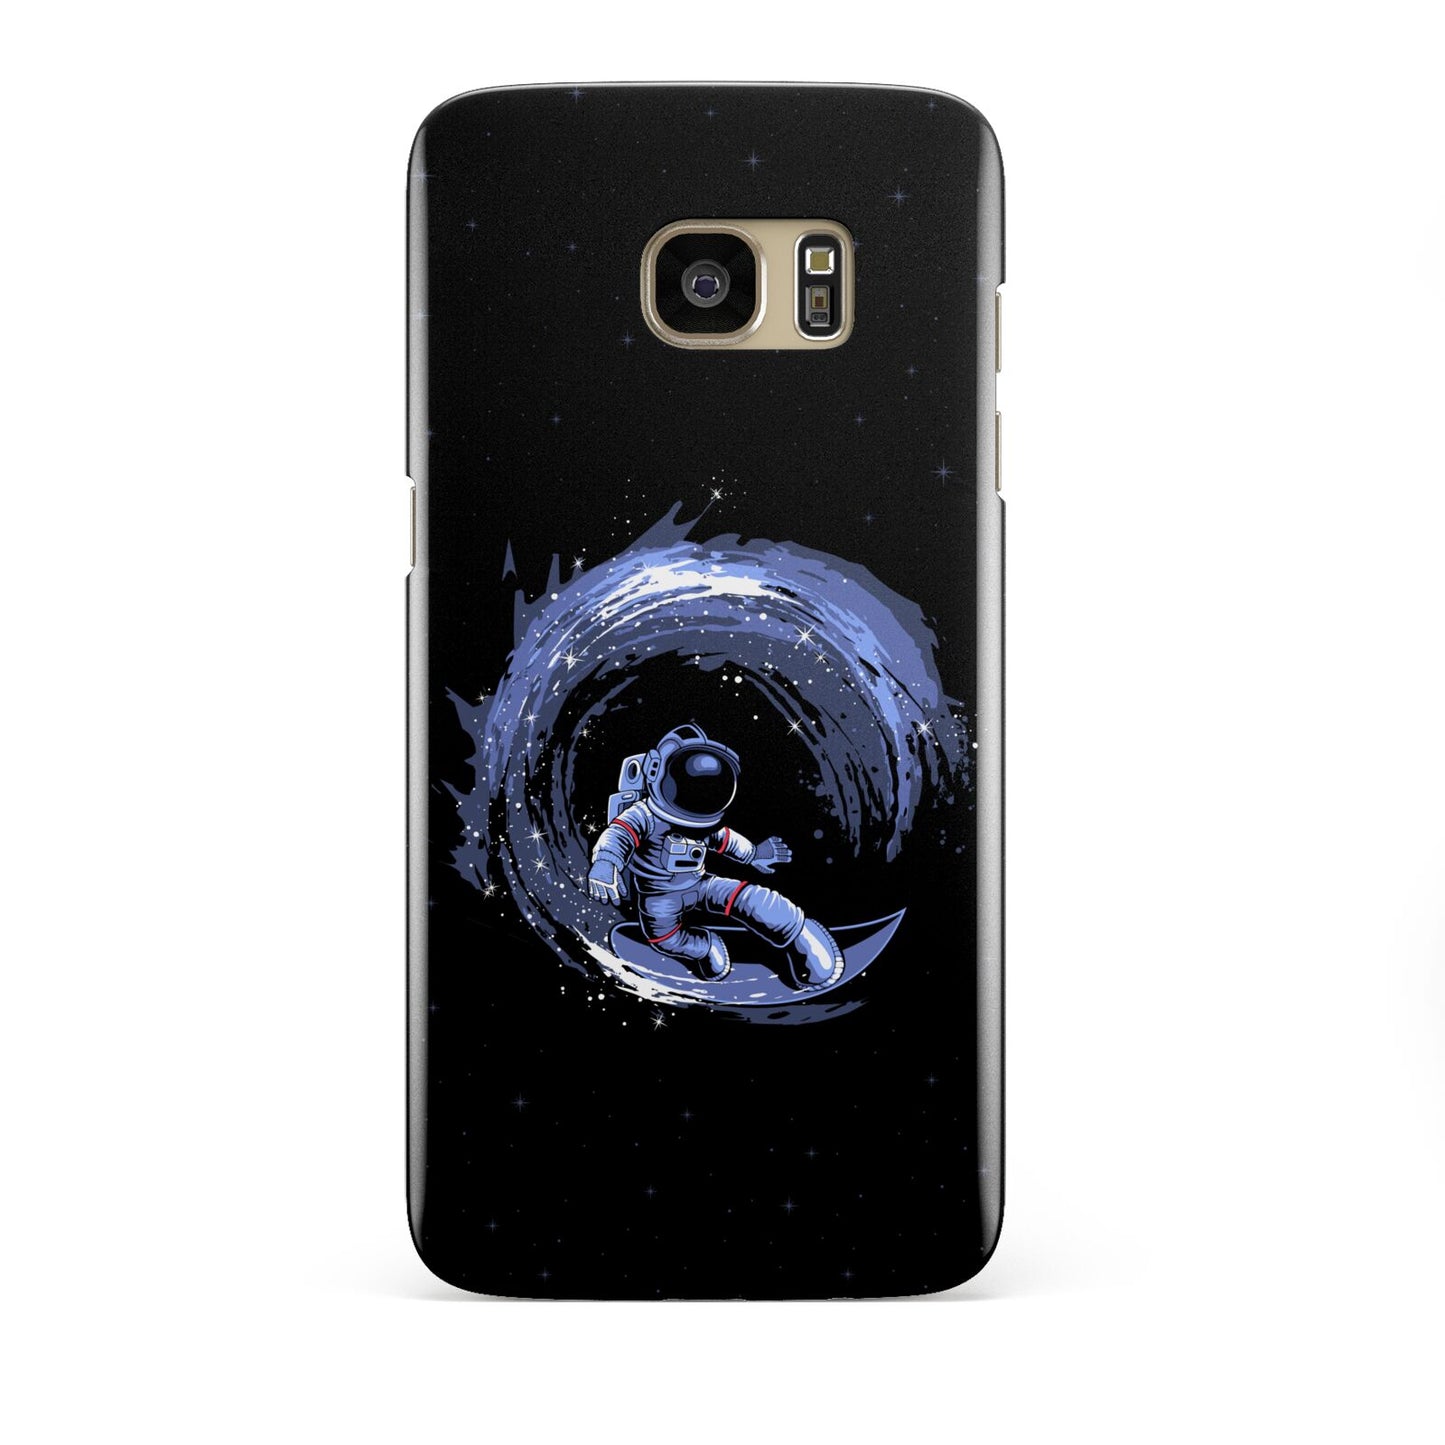 Surfing Astronaut Samsung Galaxy S7 Edge Case